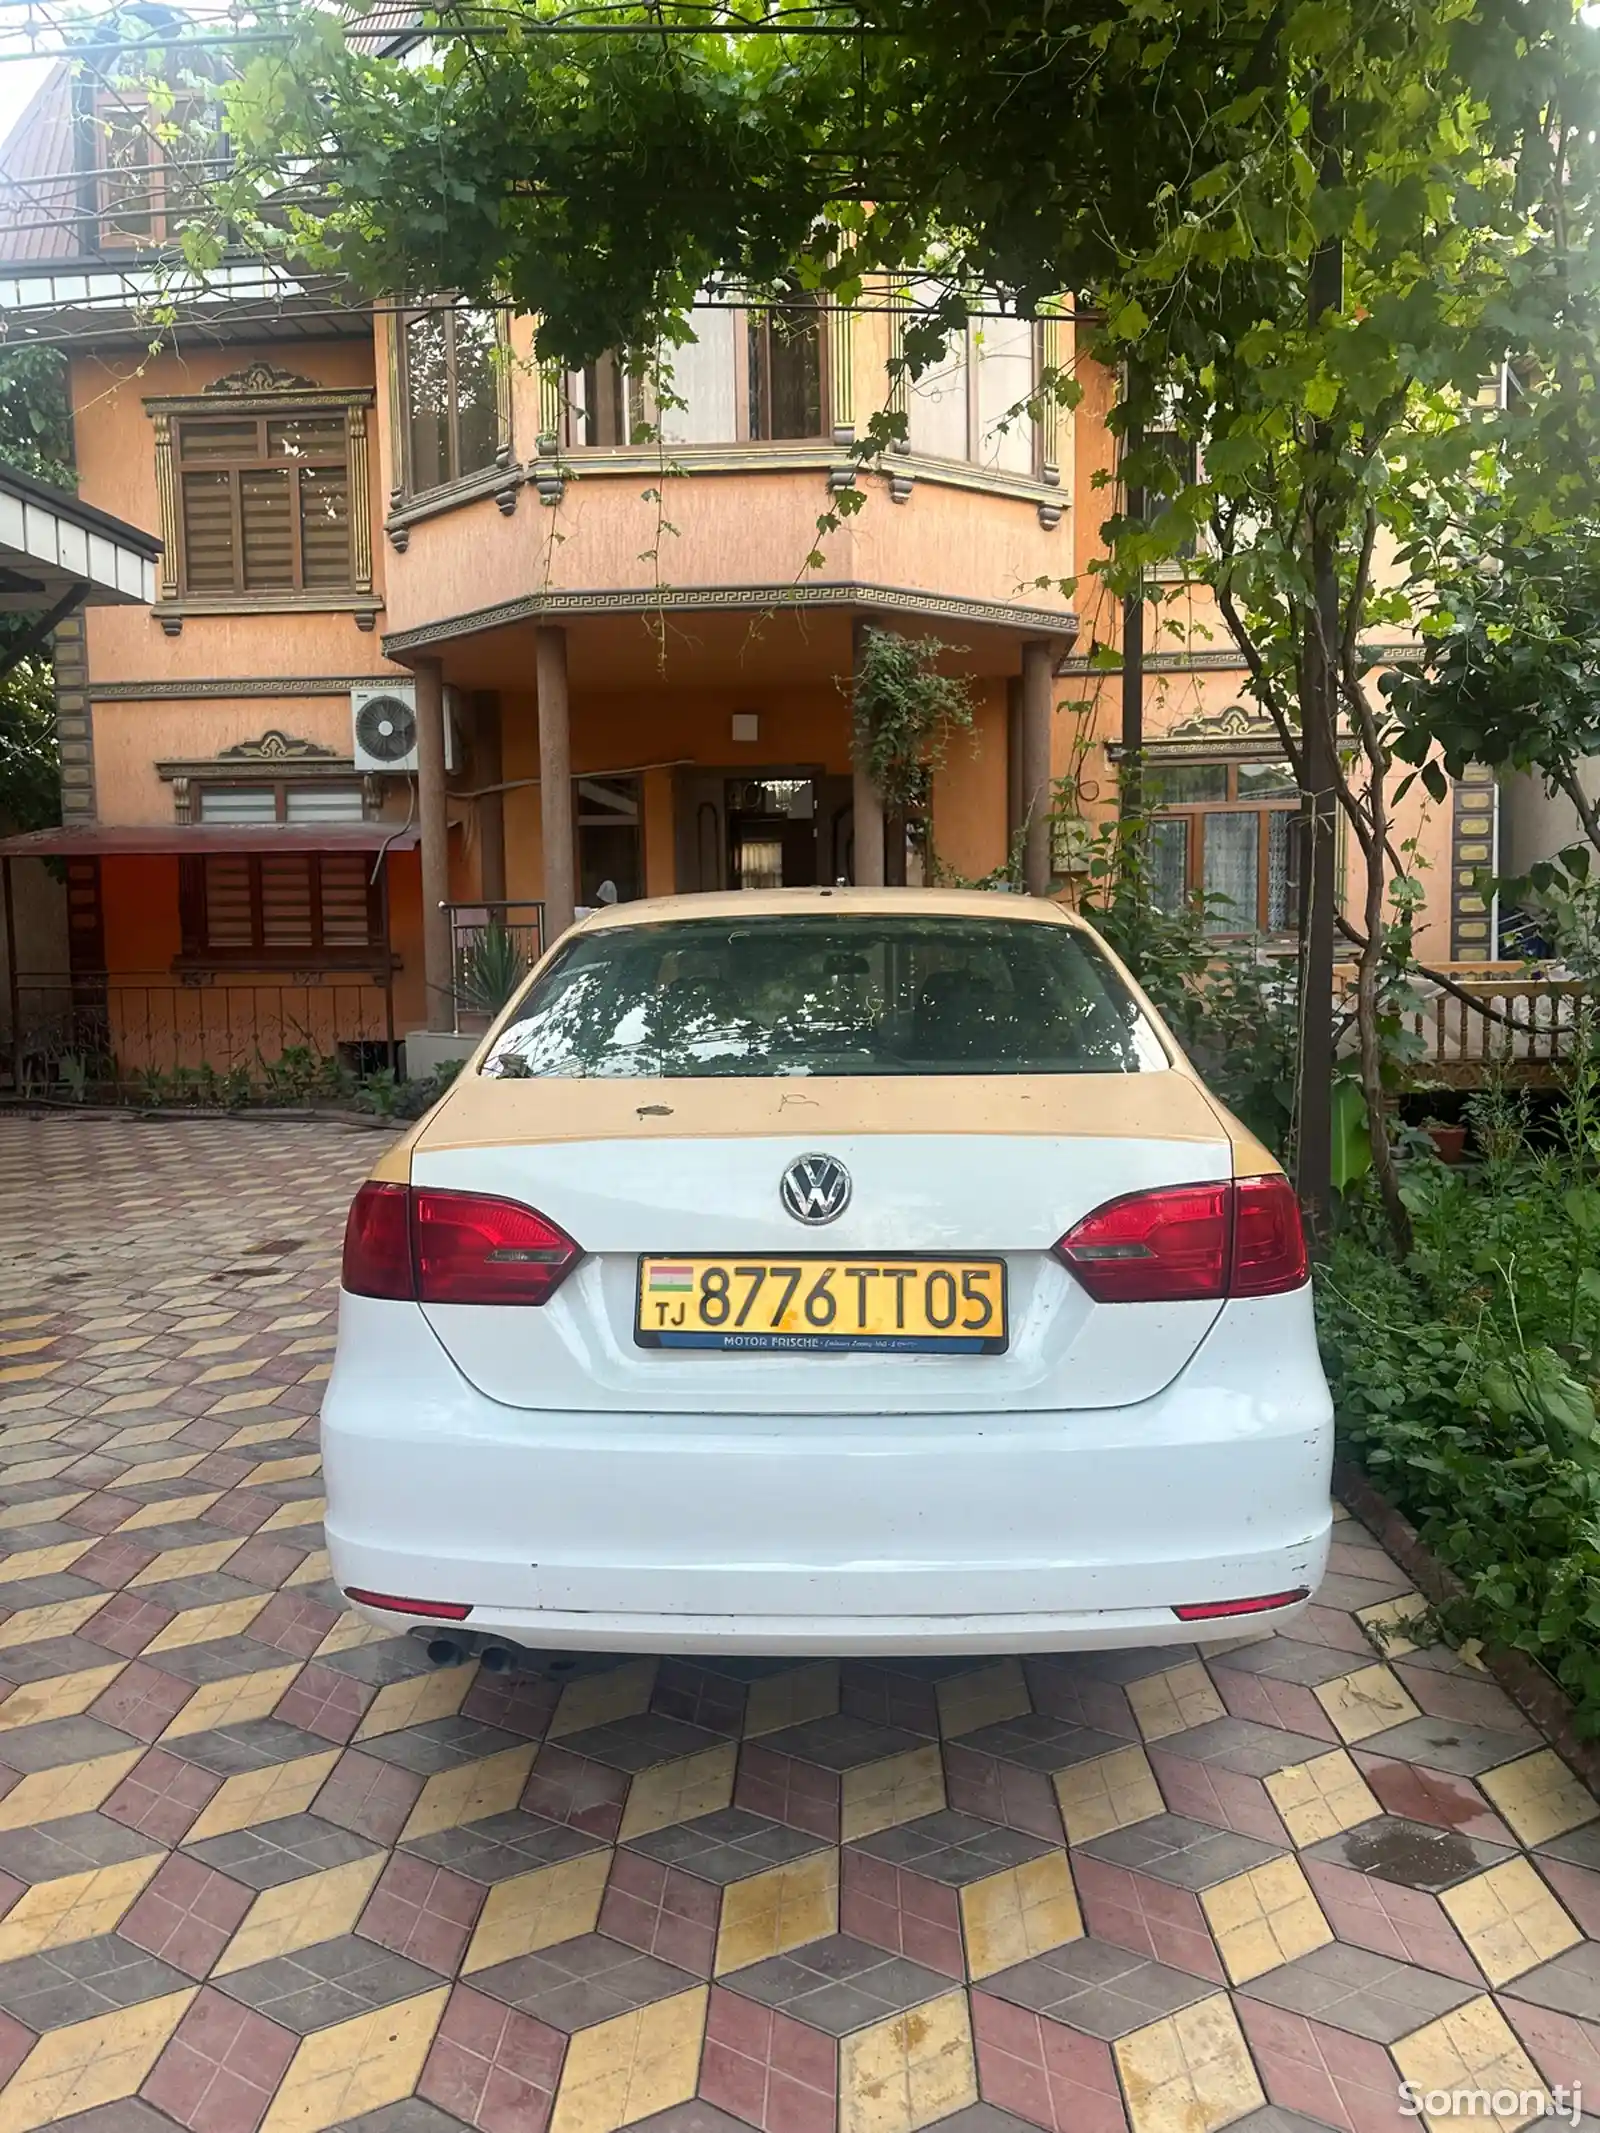 Volkswagen Jetta, 2012-2